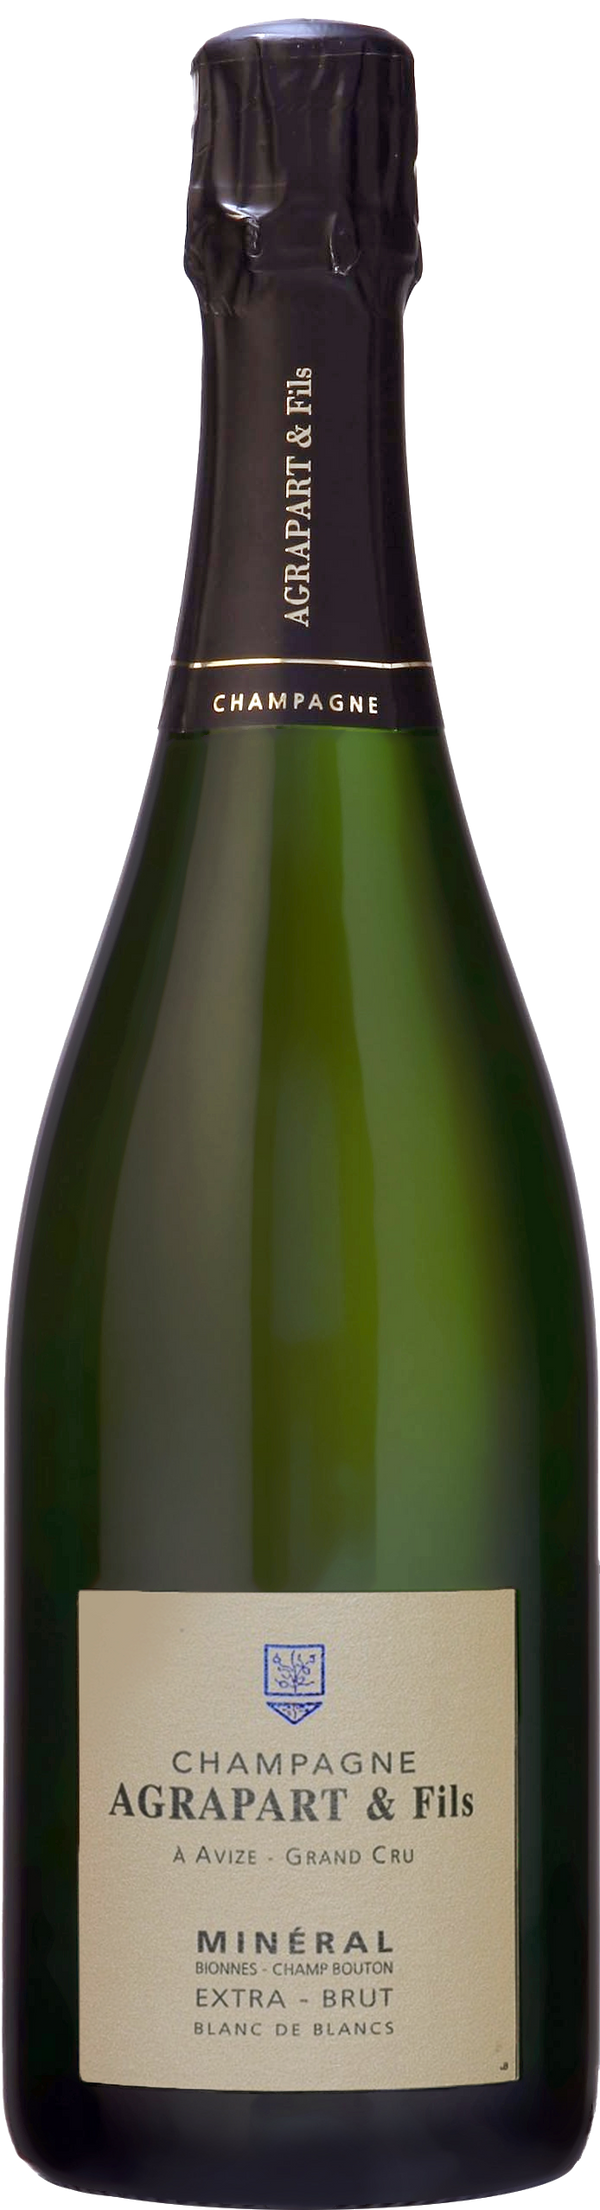 Champagne Pascal Agrapart Grand Cru Minéral Blanc de Blancs 2017 (Disg. Jun 23) (1500ml)